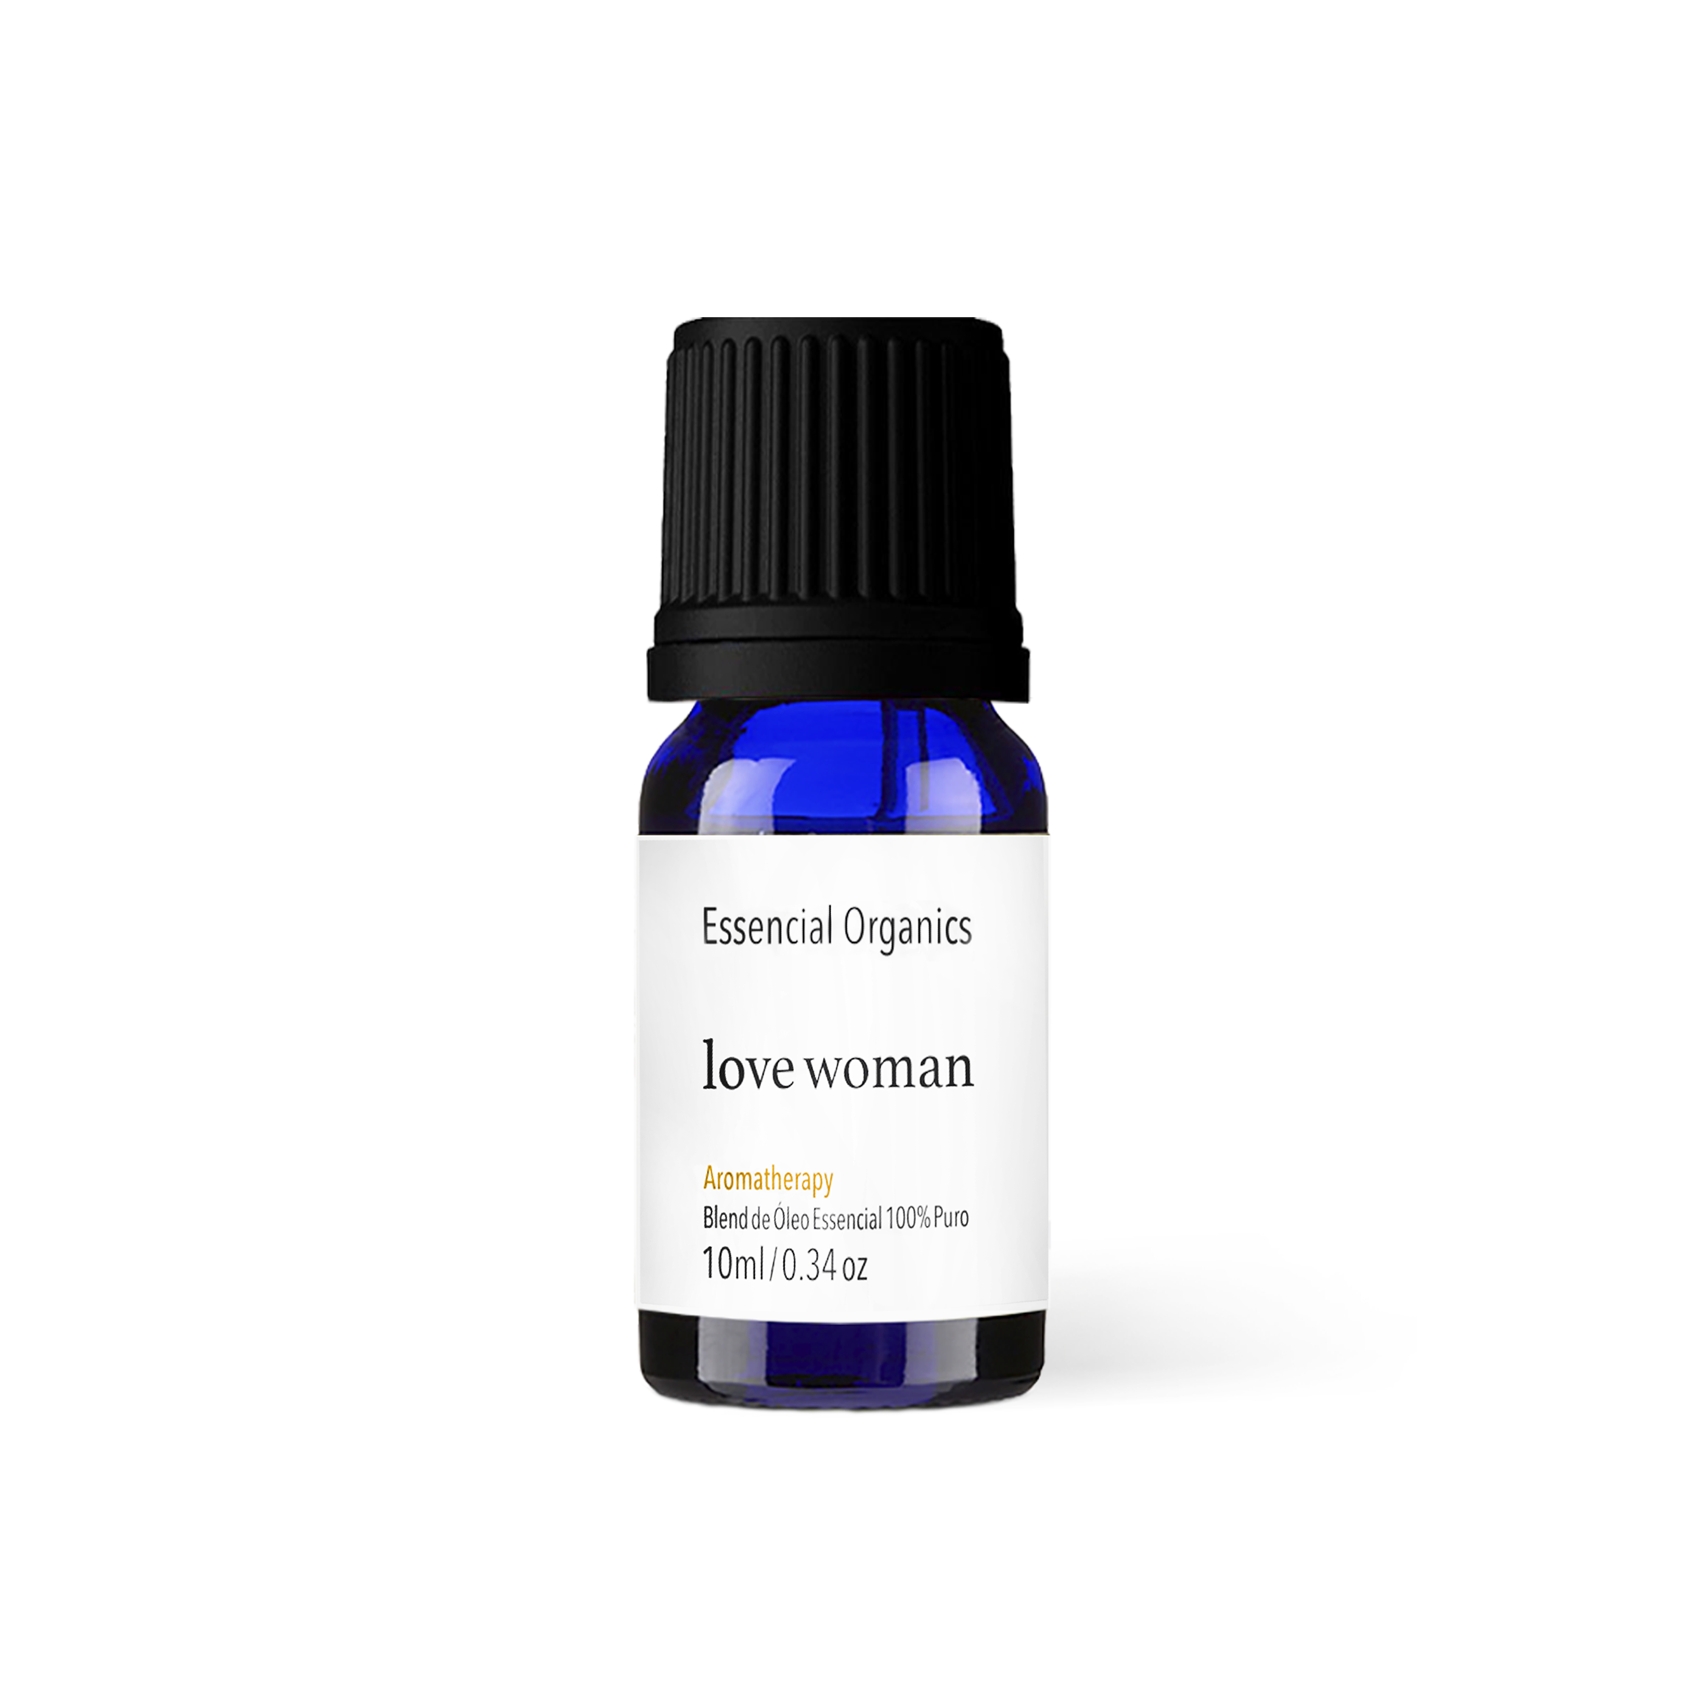 Blend Love Woman de Óleos Essenciais 10ml - Essencial Organics